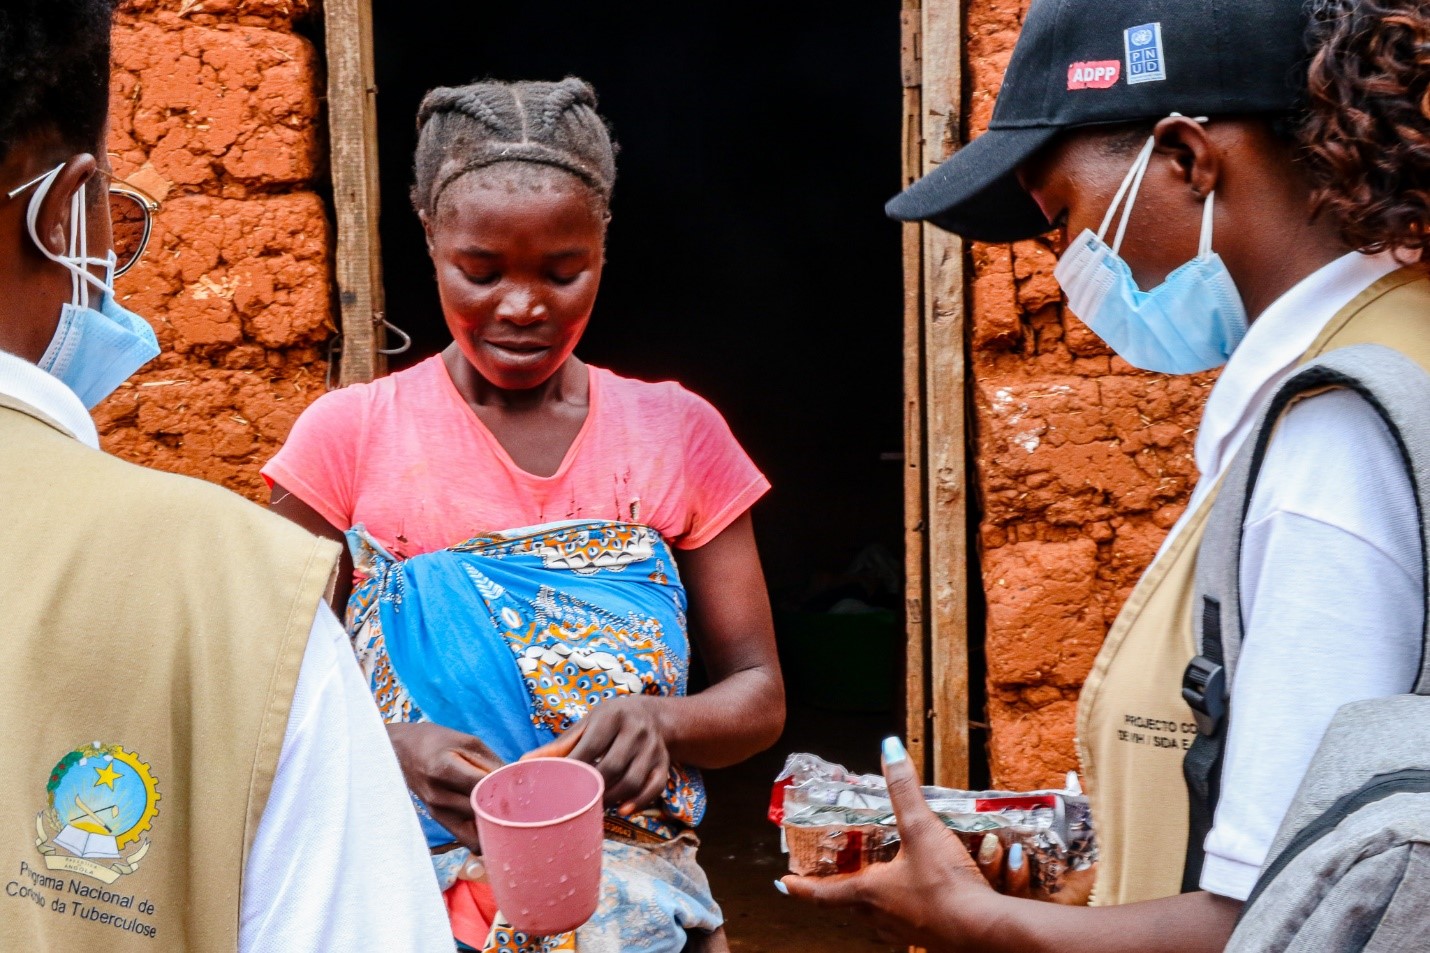 Os serviços comunitários de saúde em Angola promovem a conscientização, testagem e tratamento da tuberculose para ajudar a derrotar a tuberculose.